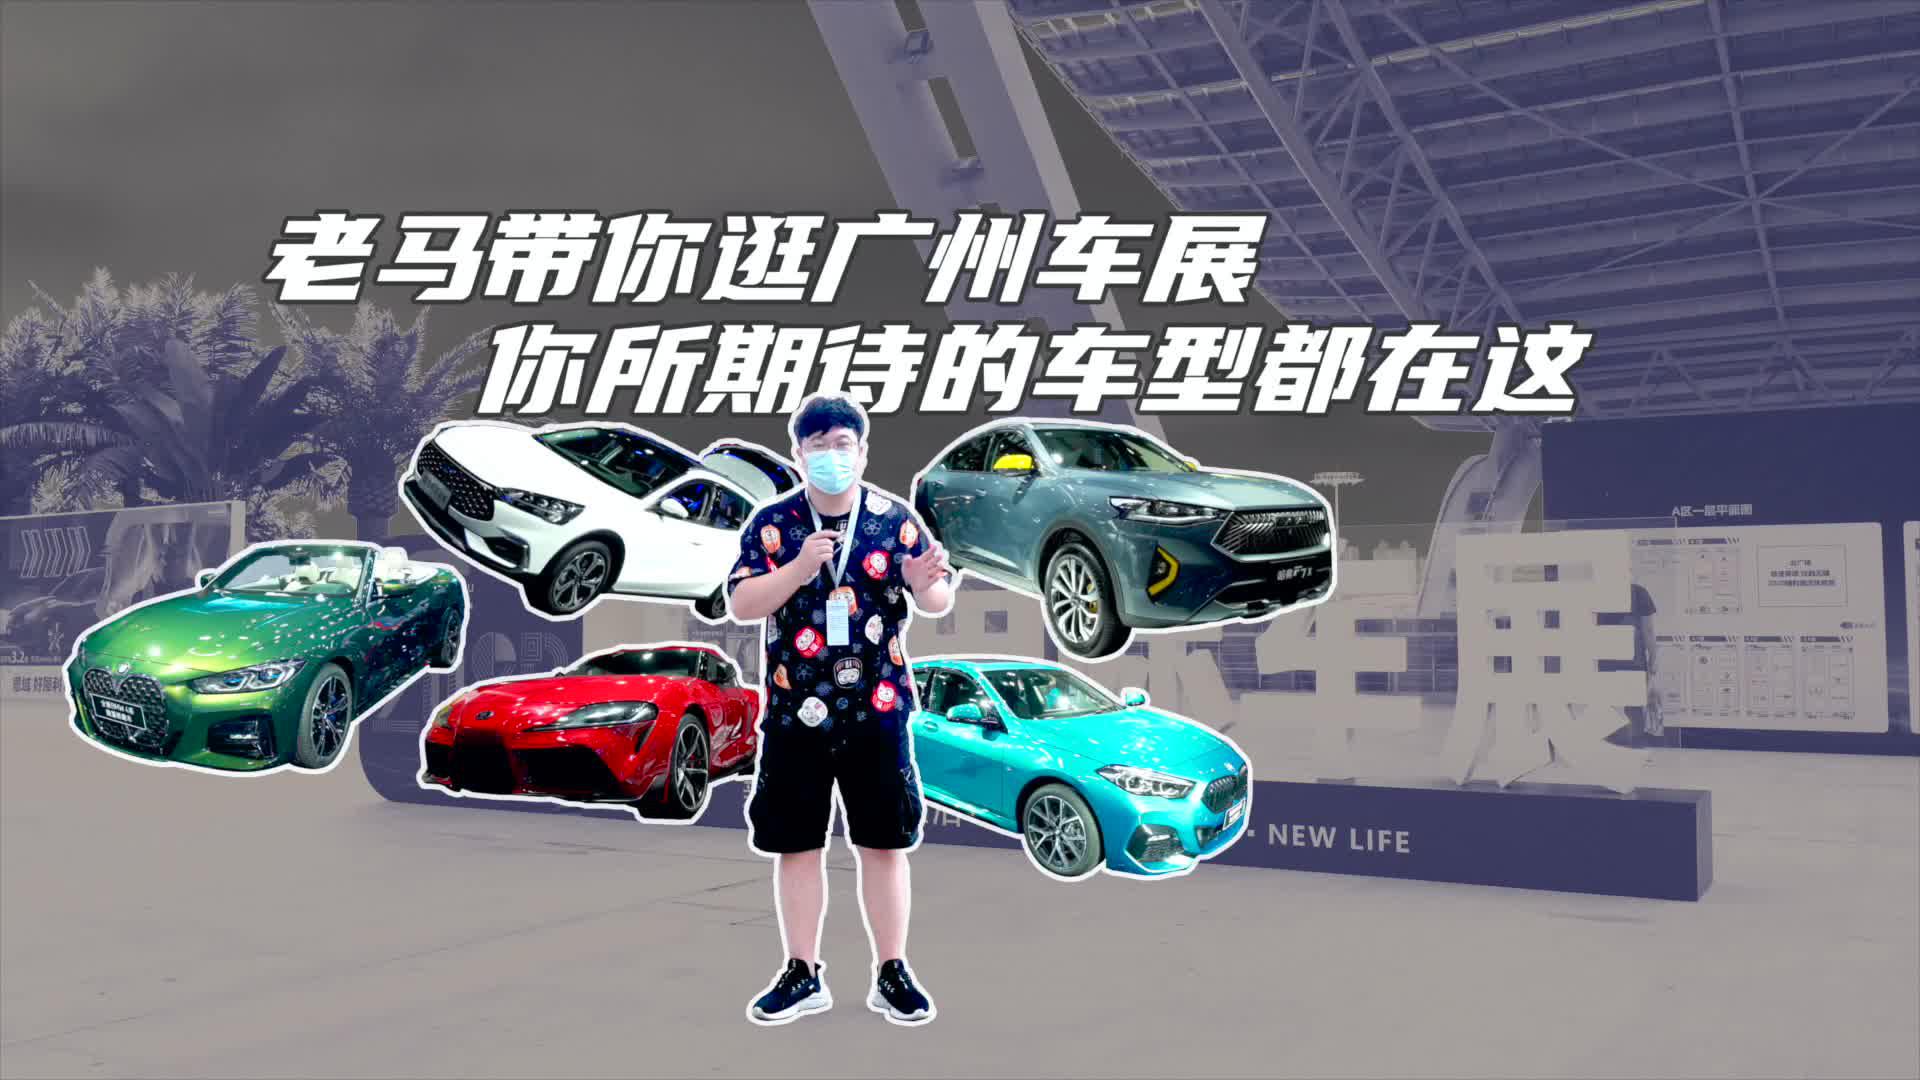 【暴走汽车】老马带你逛2020广州国际车展